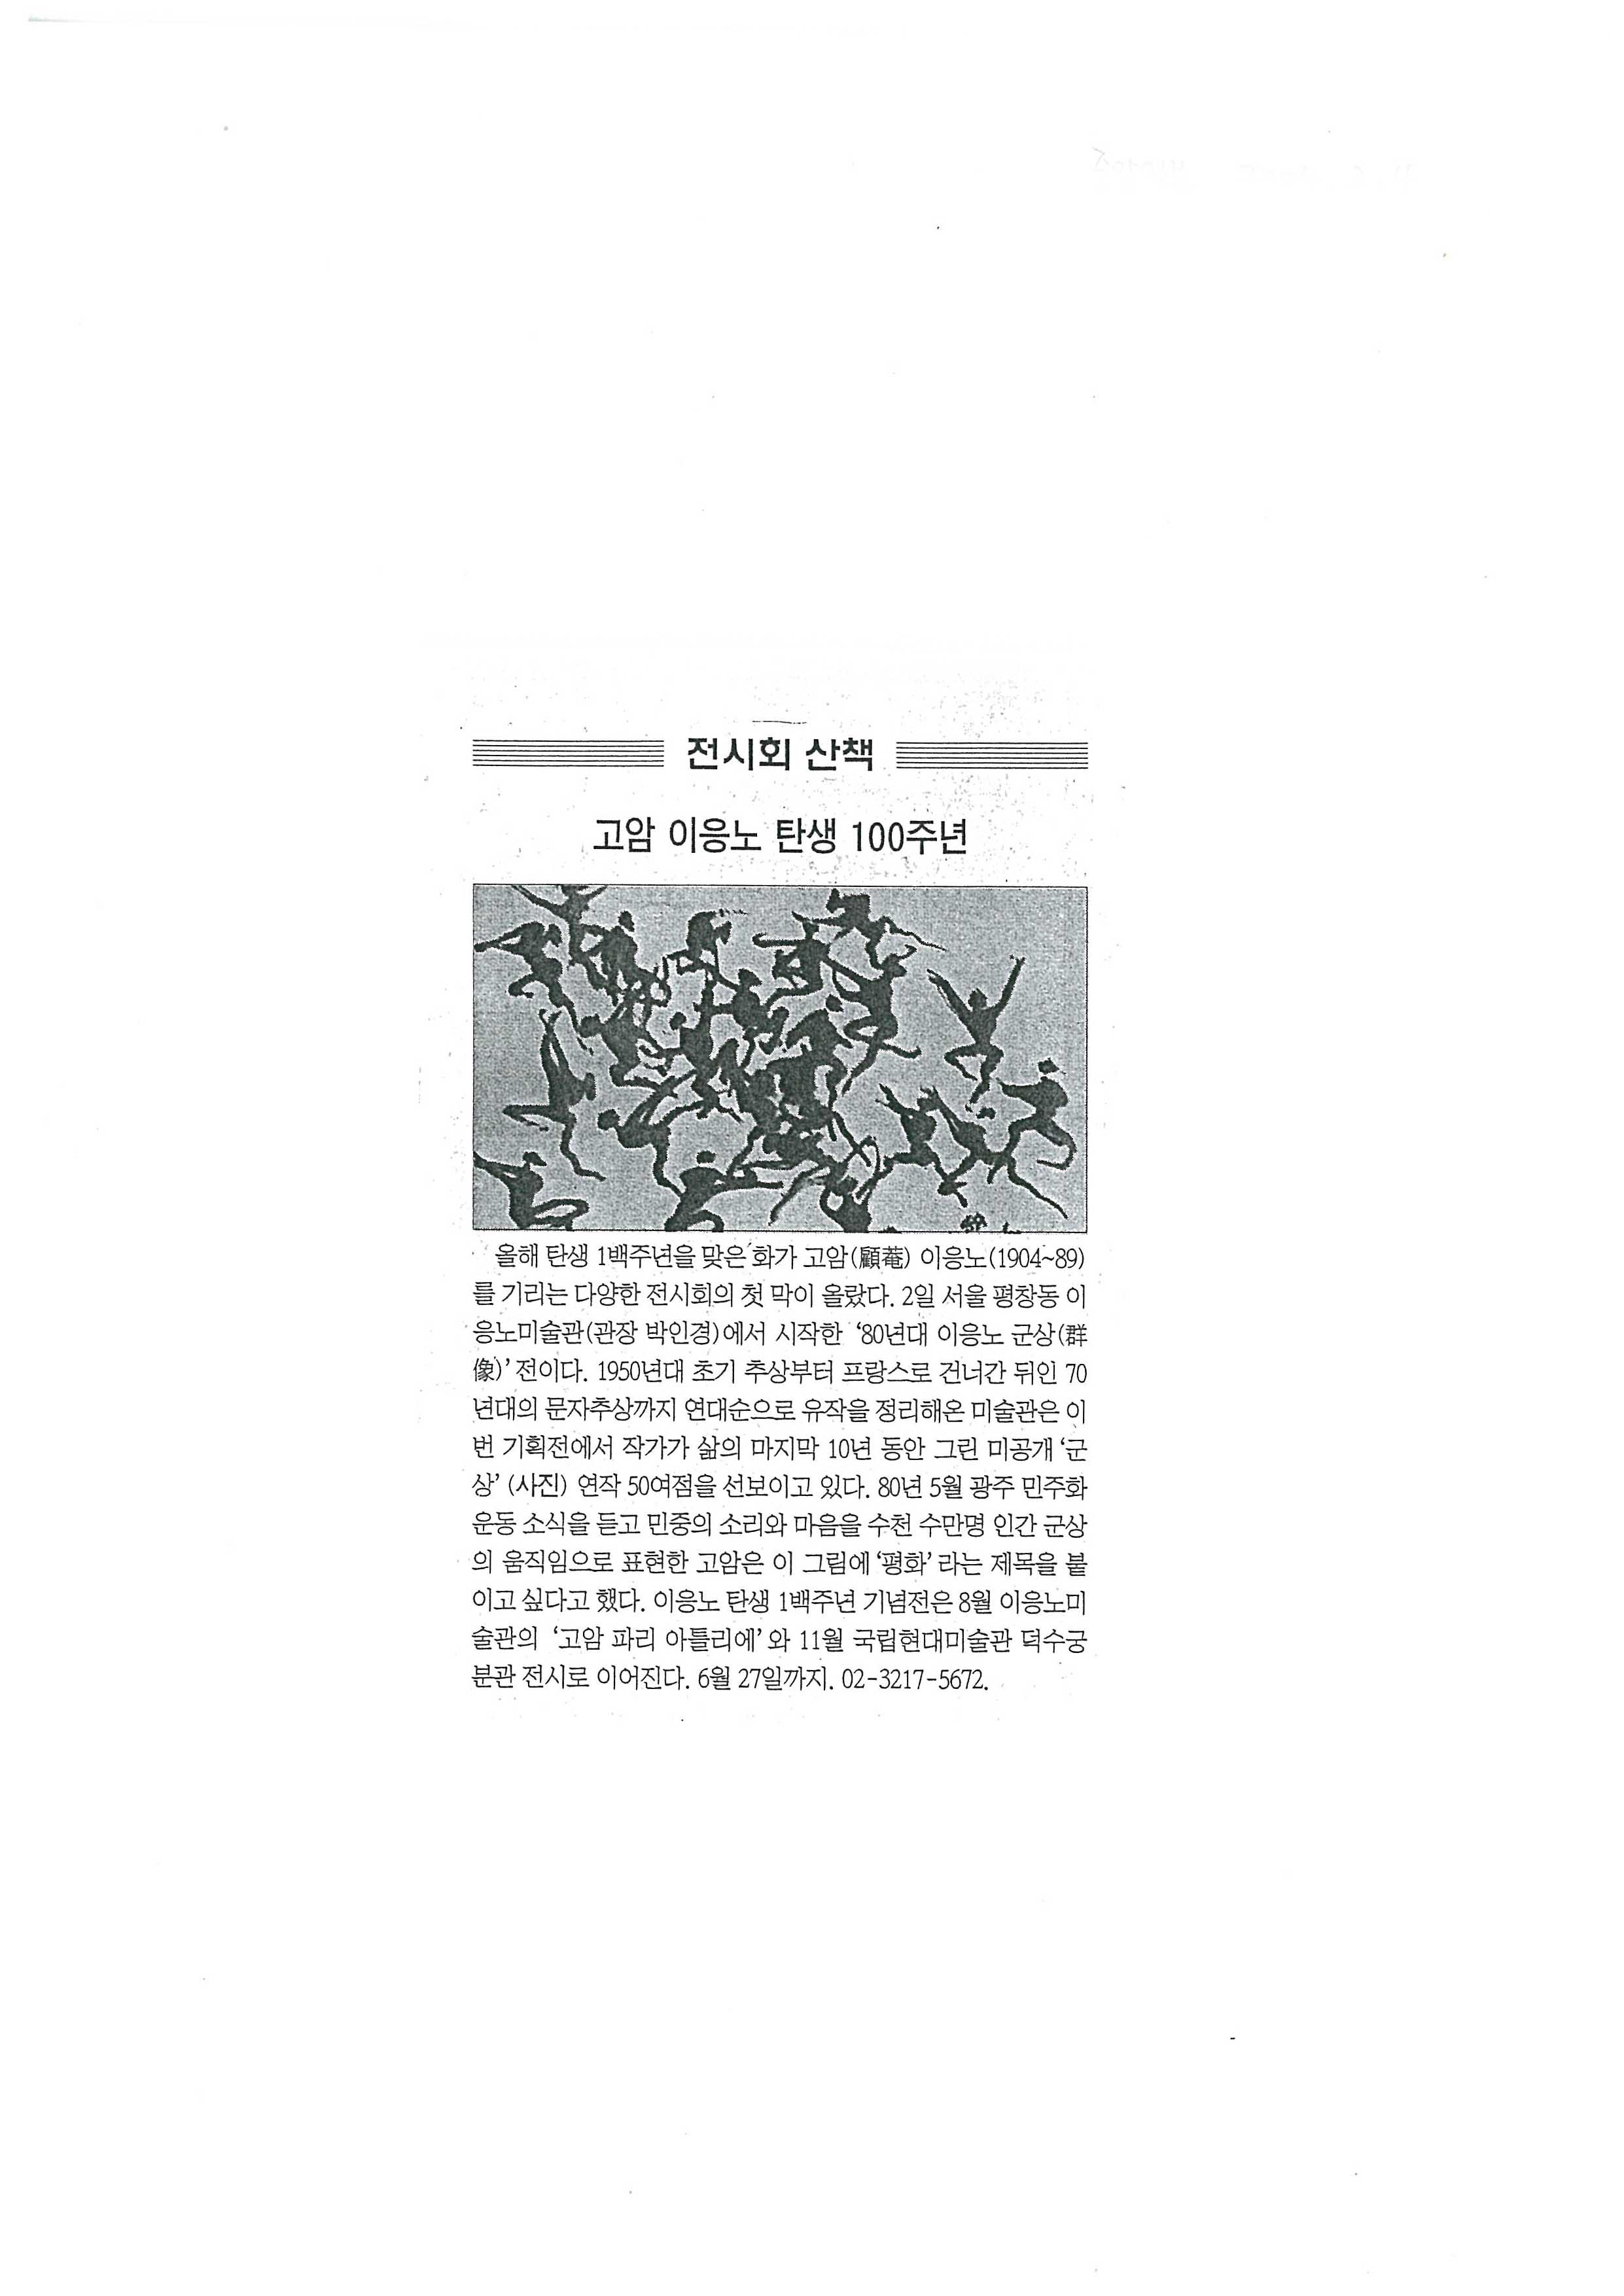 「고암 이응노 탄생 100주년」, 『중앙일보』